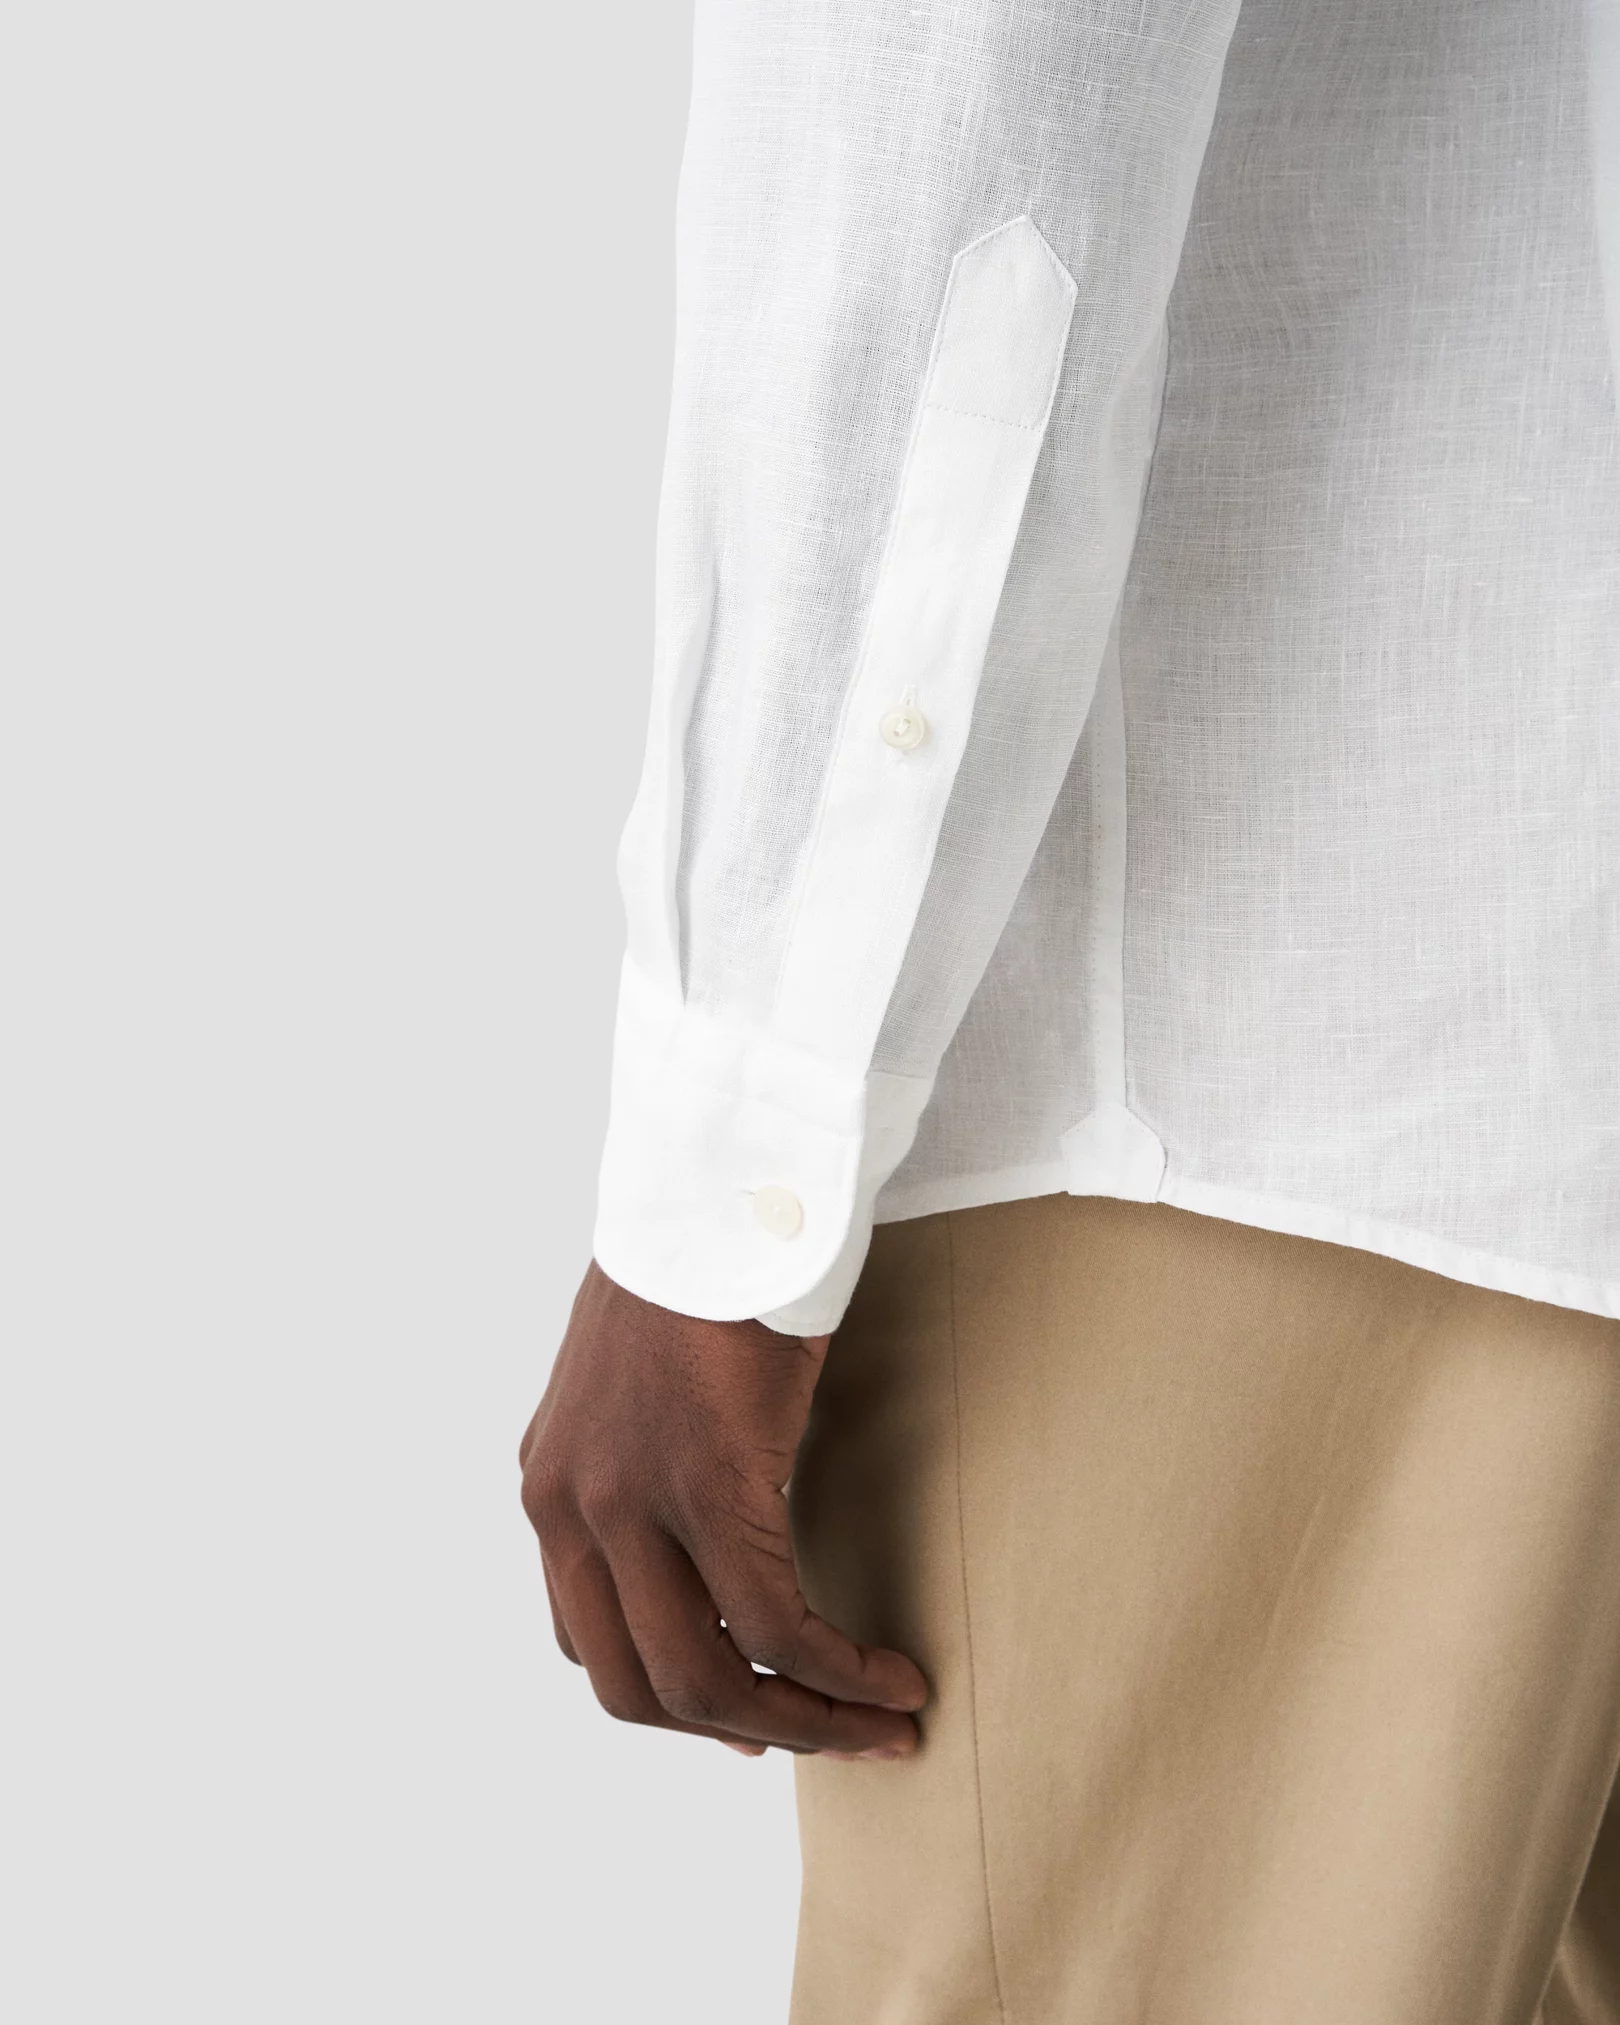 White Solid Linen Shirt - Eton